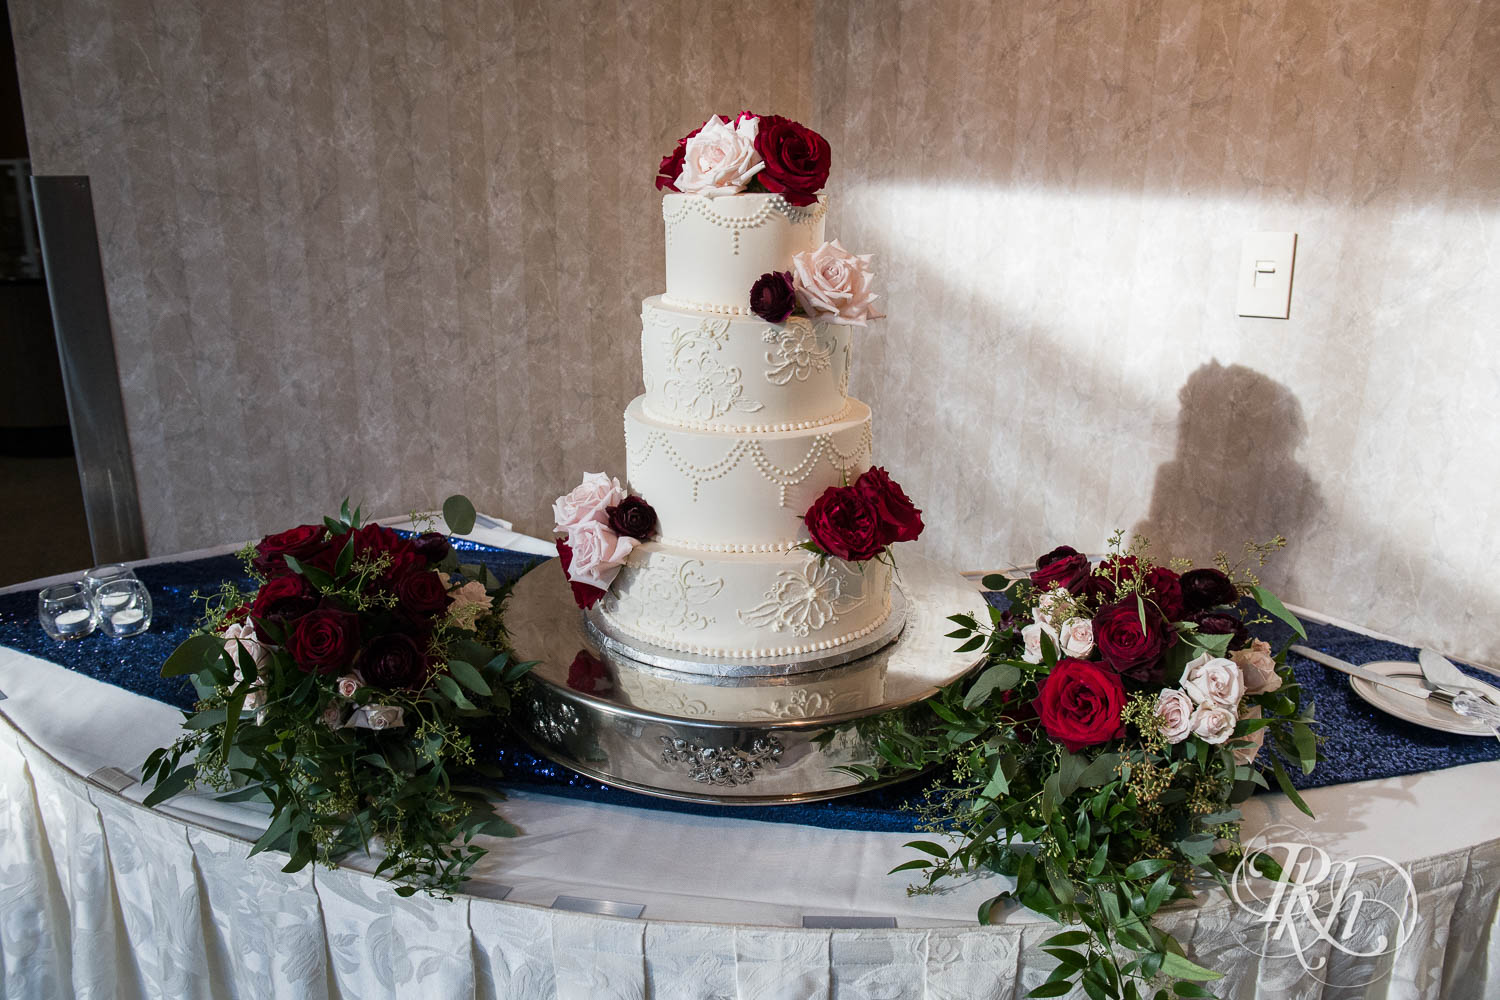 Minnesota September indoor wedding cake in Chaska, Minnesota.